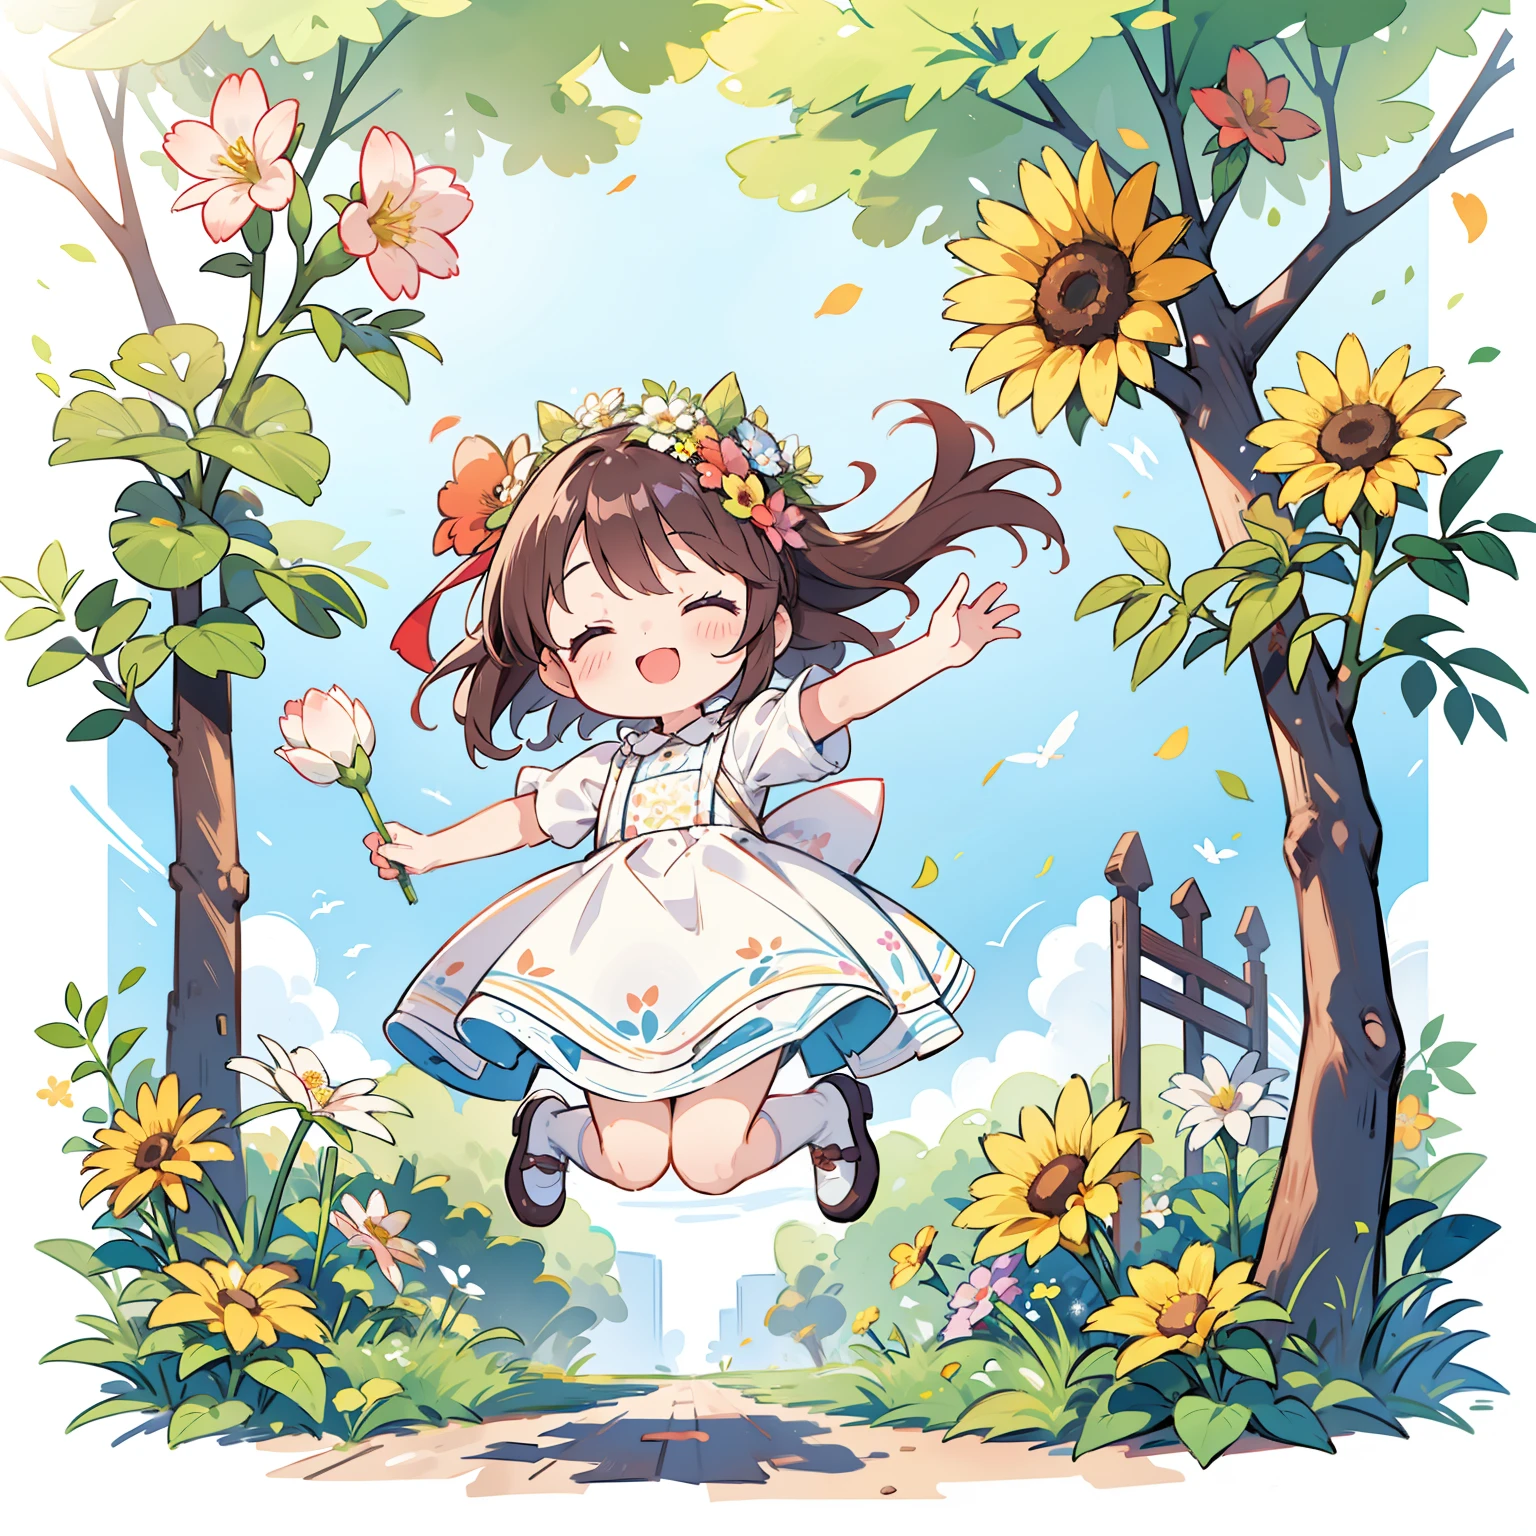 포스터 제작, 어린이 날, 정원 안에, 꽃을 들고 있는 어린 소녀들, 공중에 떠 있는 꽃들, 행복하다, 점프, 행복하다 --v 6